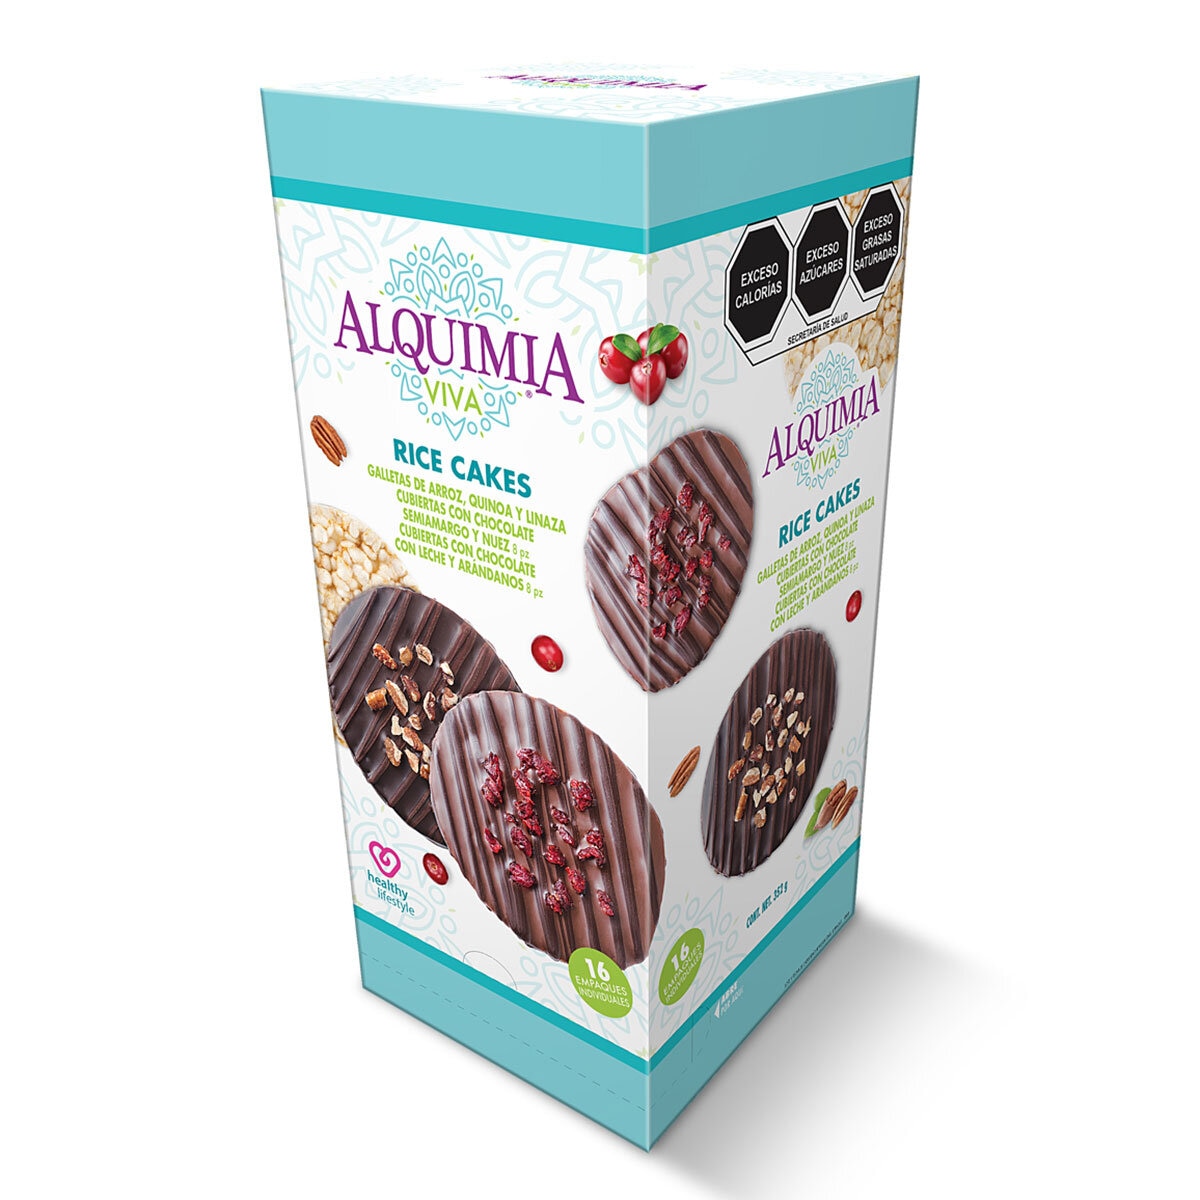 Alquimia Viva Galletas de Arroz, Quinoa y Linaza Cubiertas de Chocolate 352 g